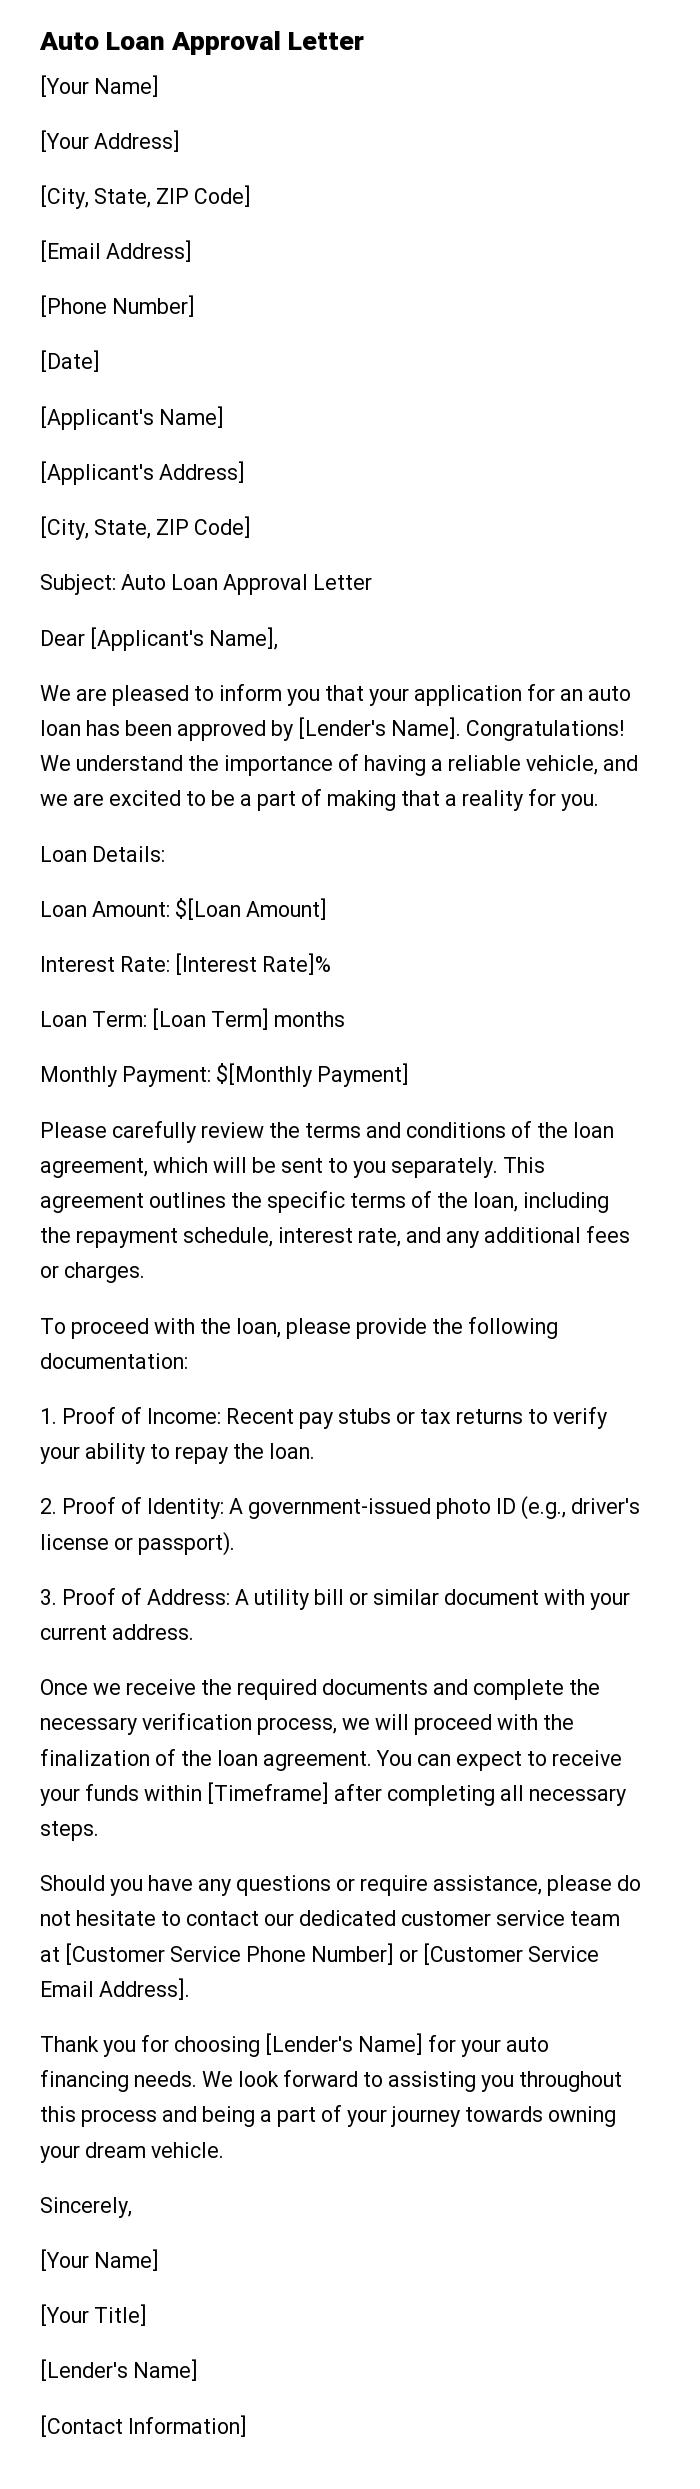 Auto Loan Approval Letter